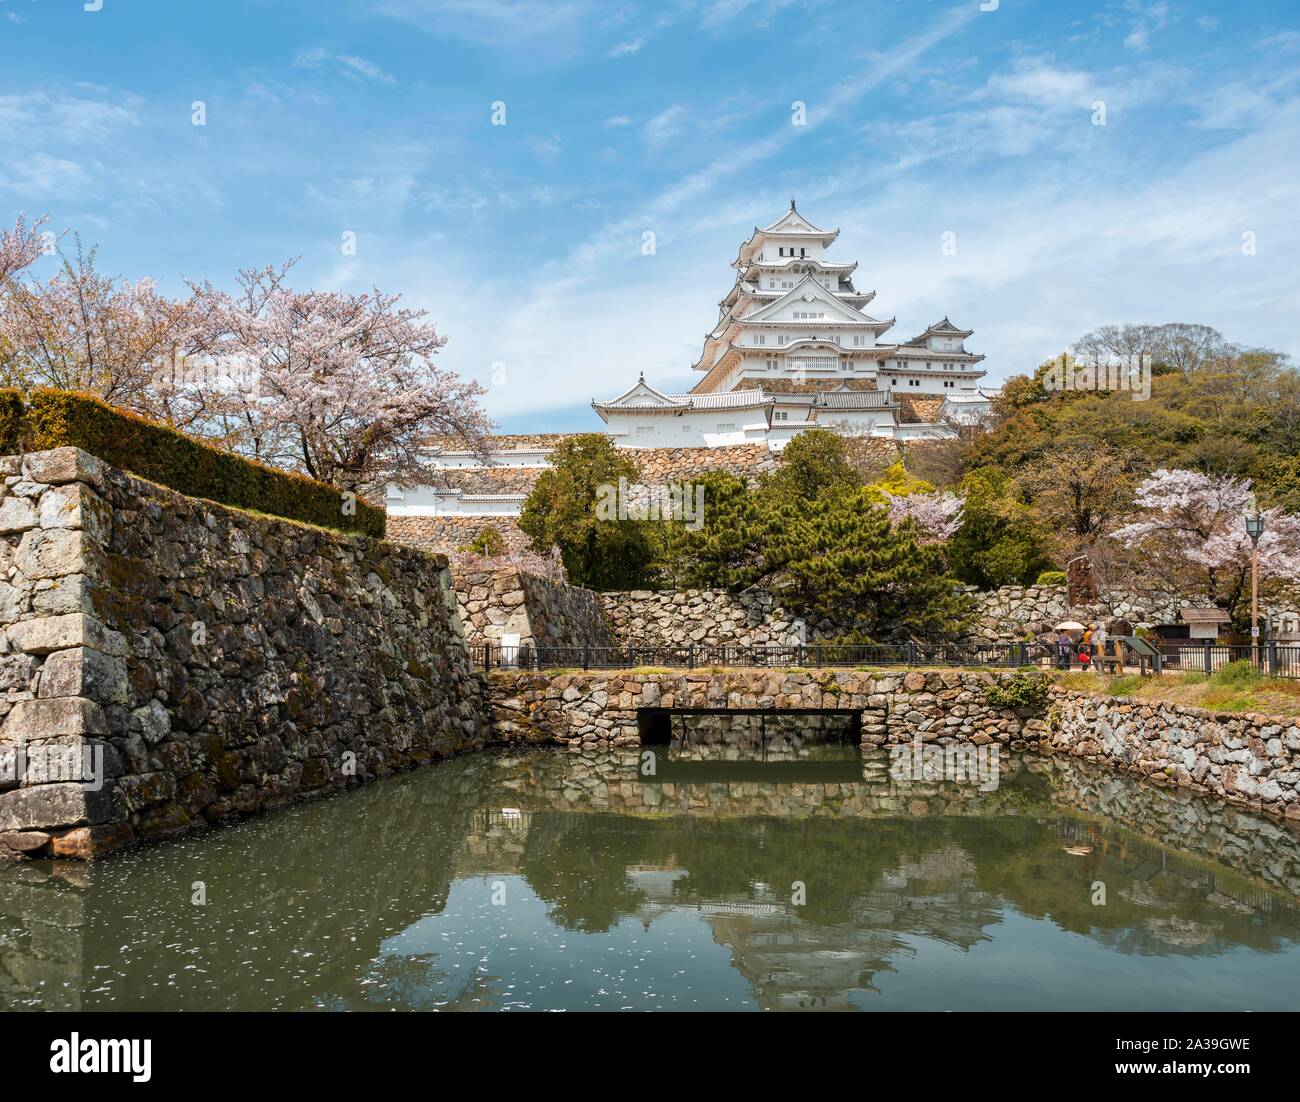 La réflexion de l'eau dans les douves du château de Himeji, Himeji-jo, Shirasagijo ou héron blanc, château Himeji, préfecture de Hyogo, Japon Banque D'Images